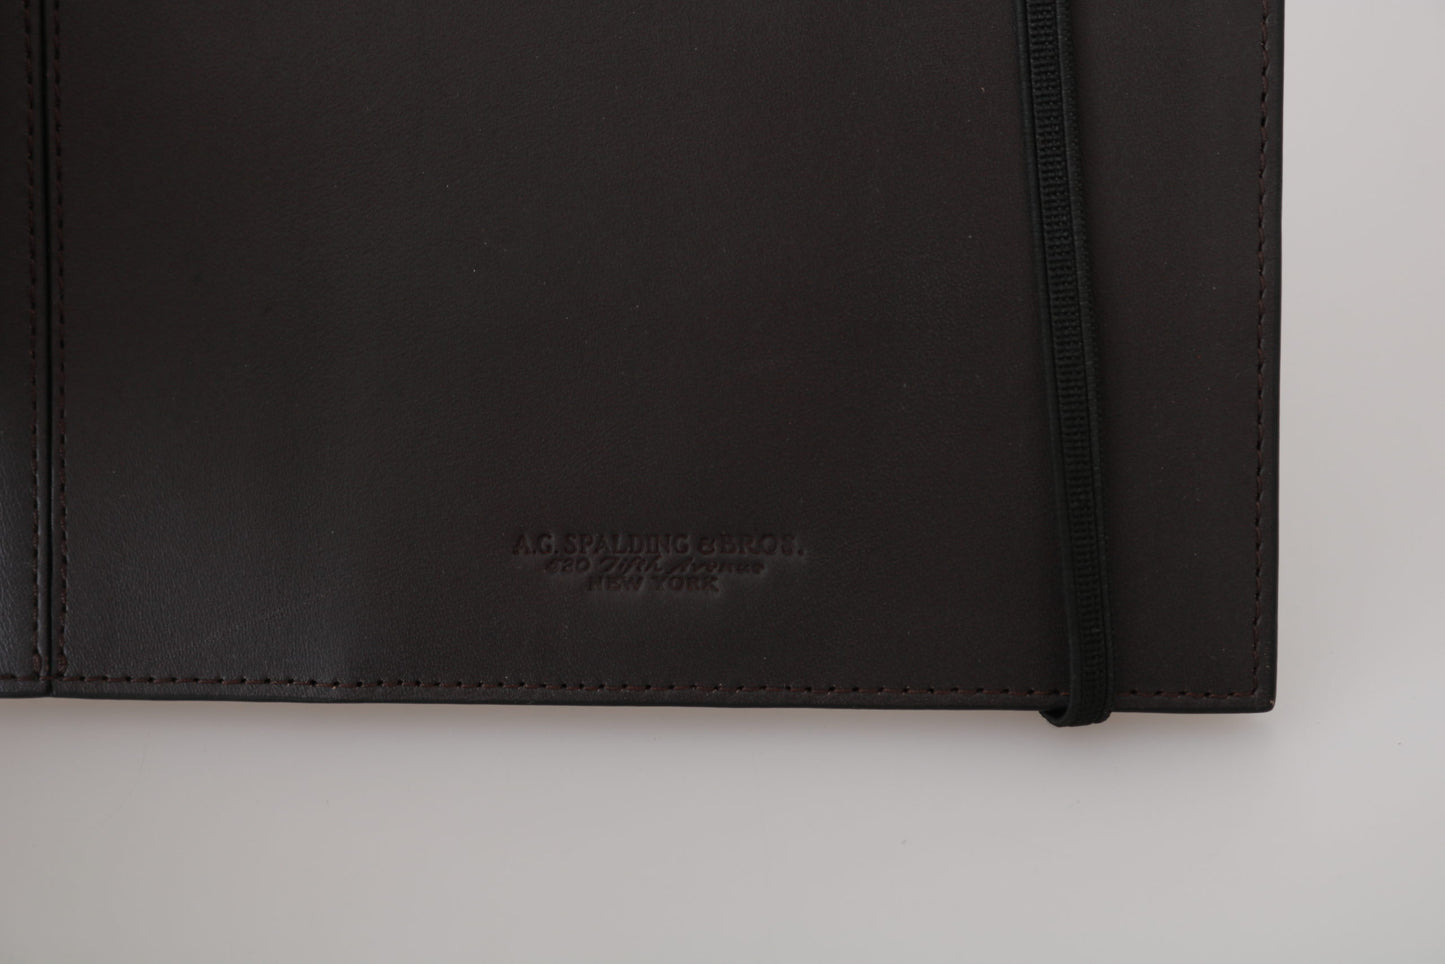 A.G. Spalding & Bros Elegant Leather Passport Wallet - Sleek Travel Essential